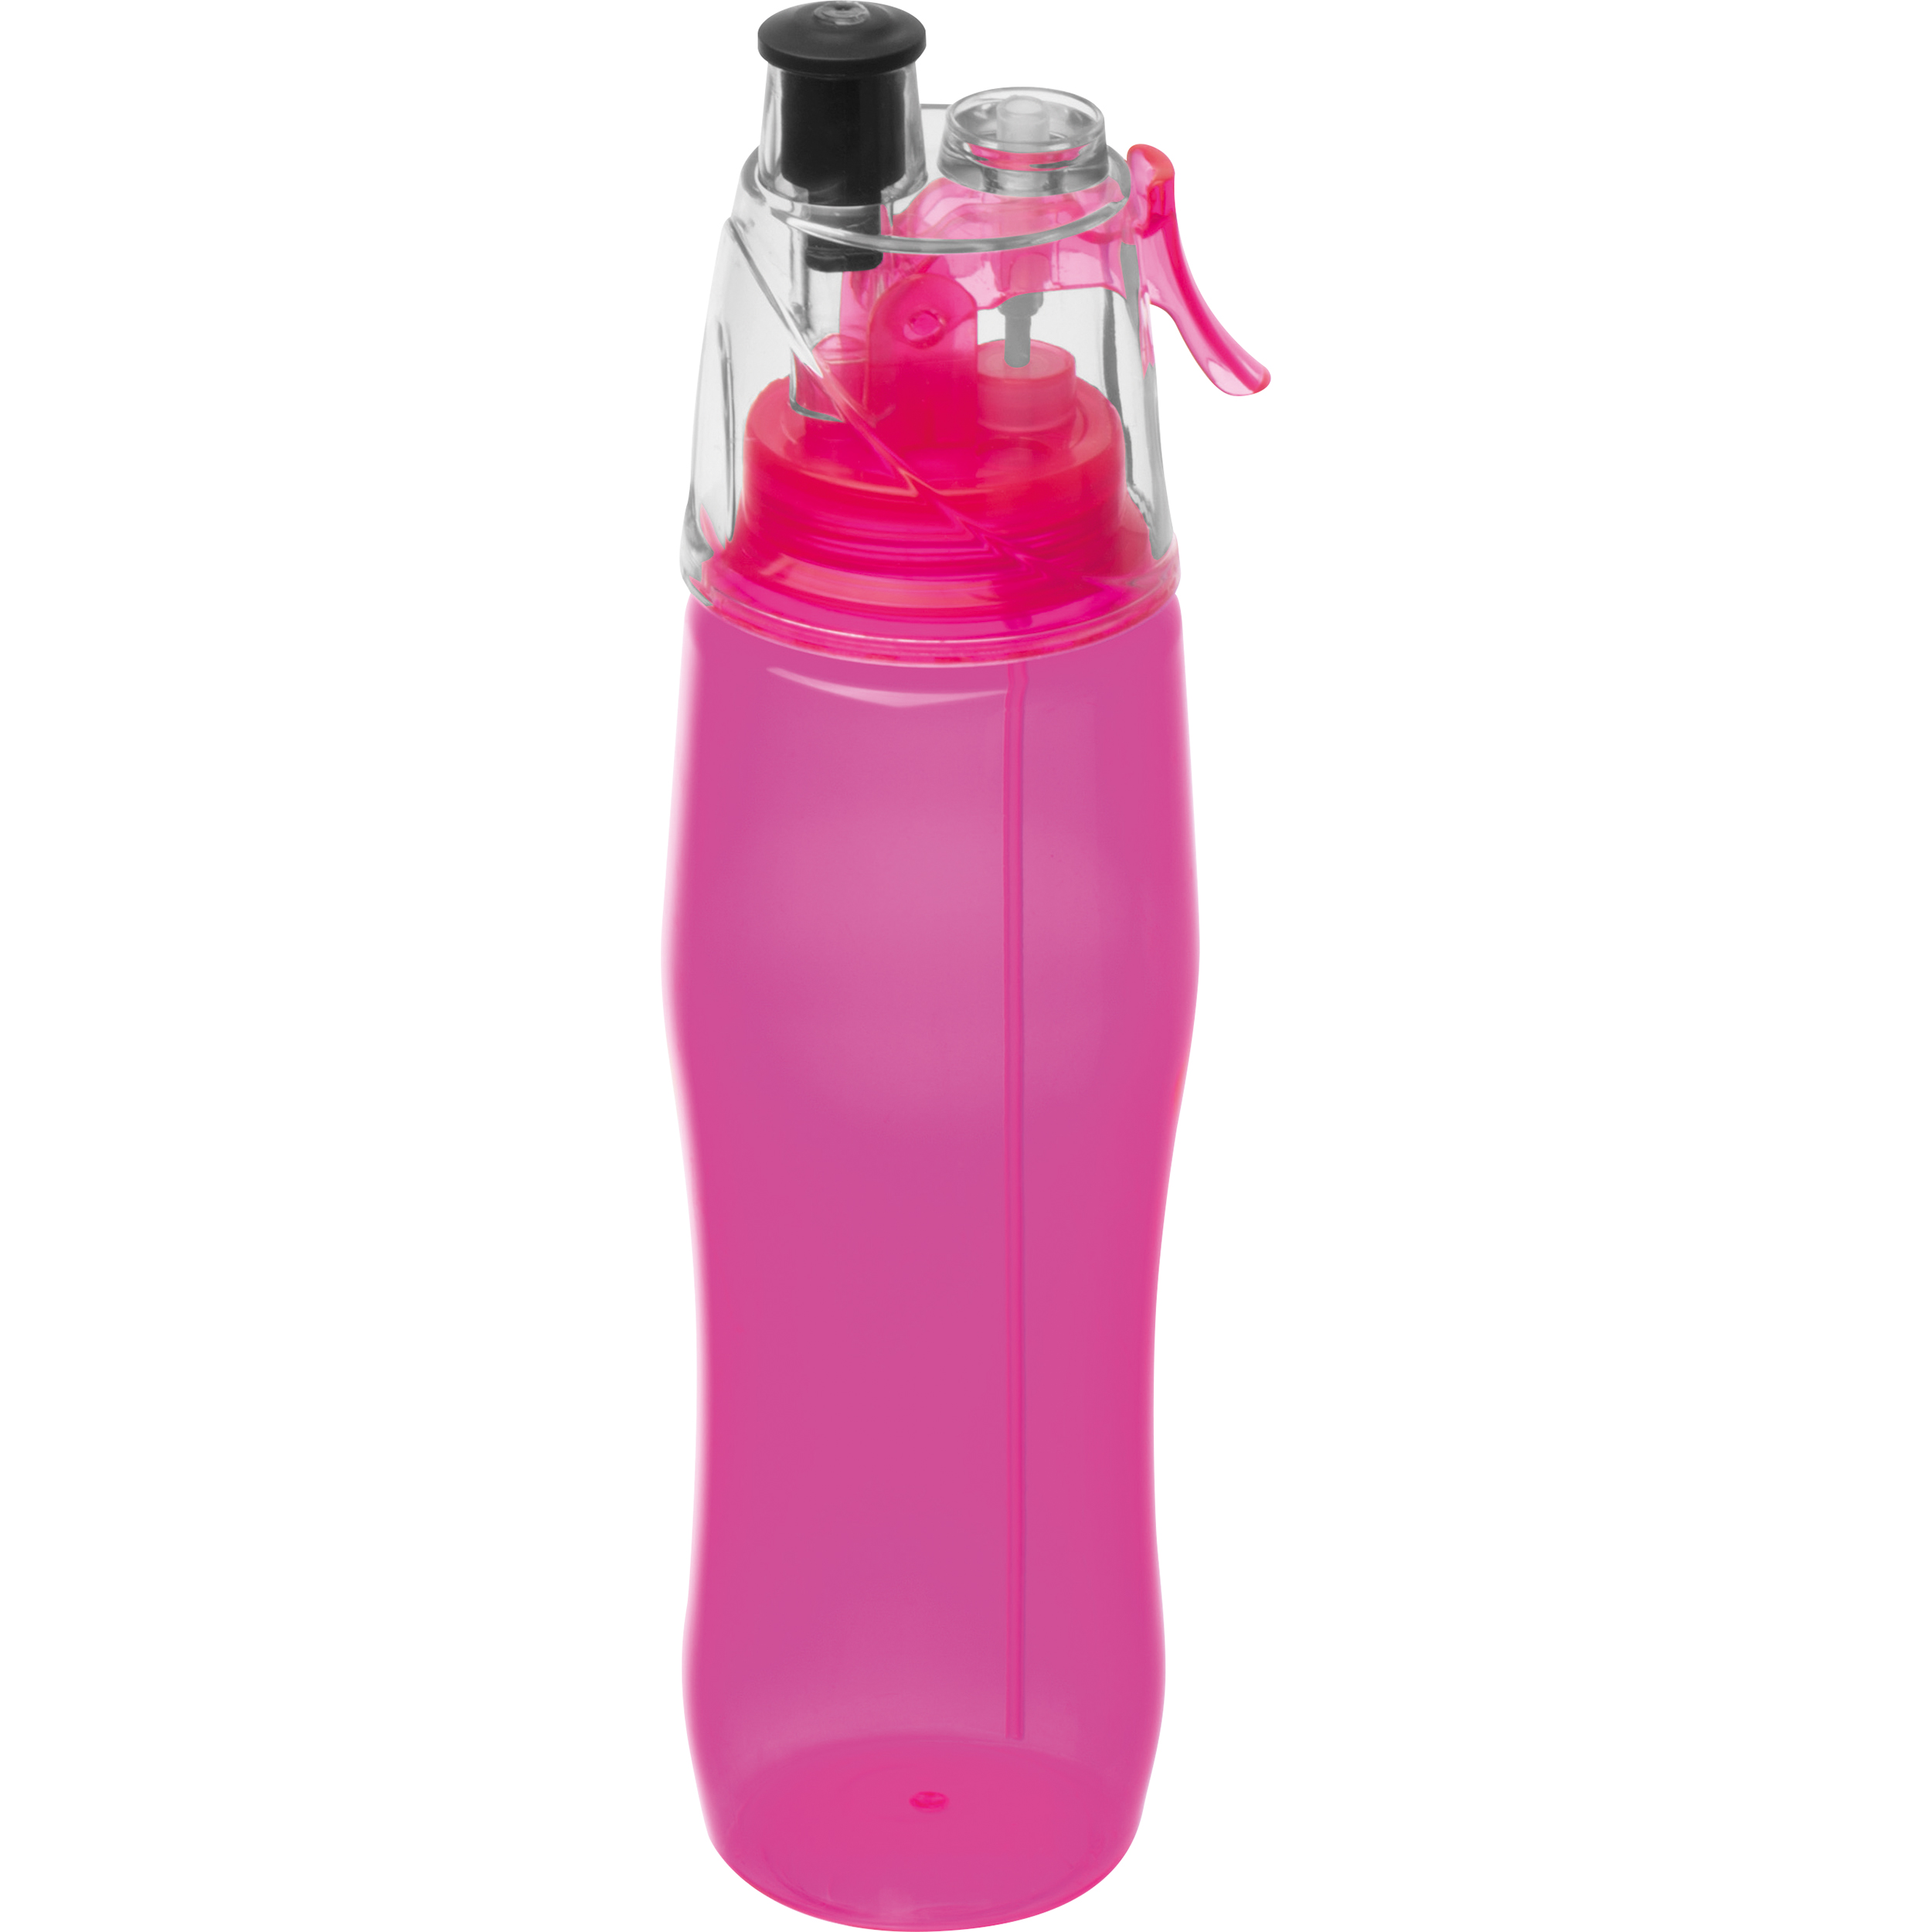 Sporttrinkflasche mit Sprayfunktion 